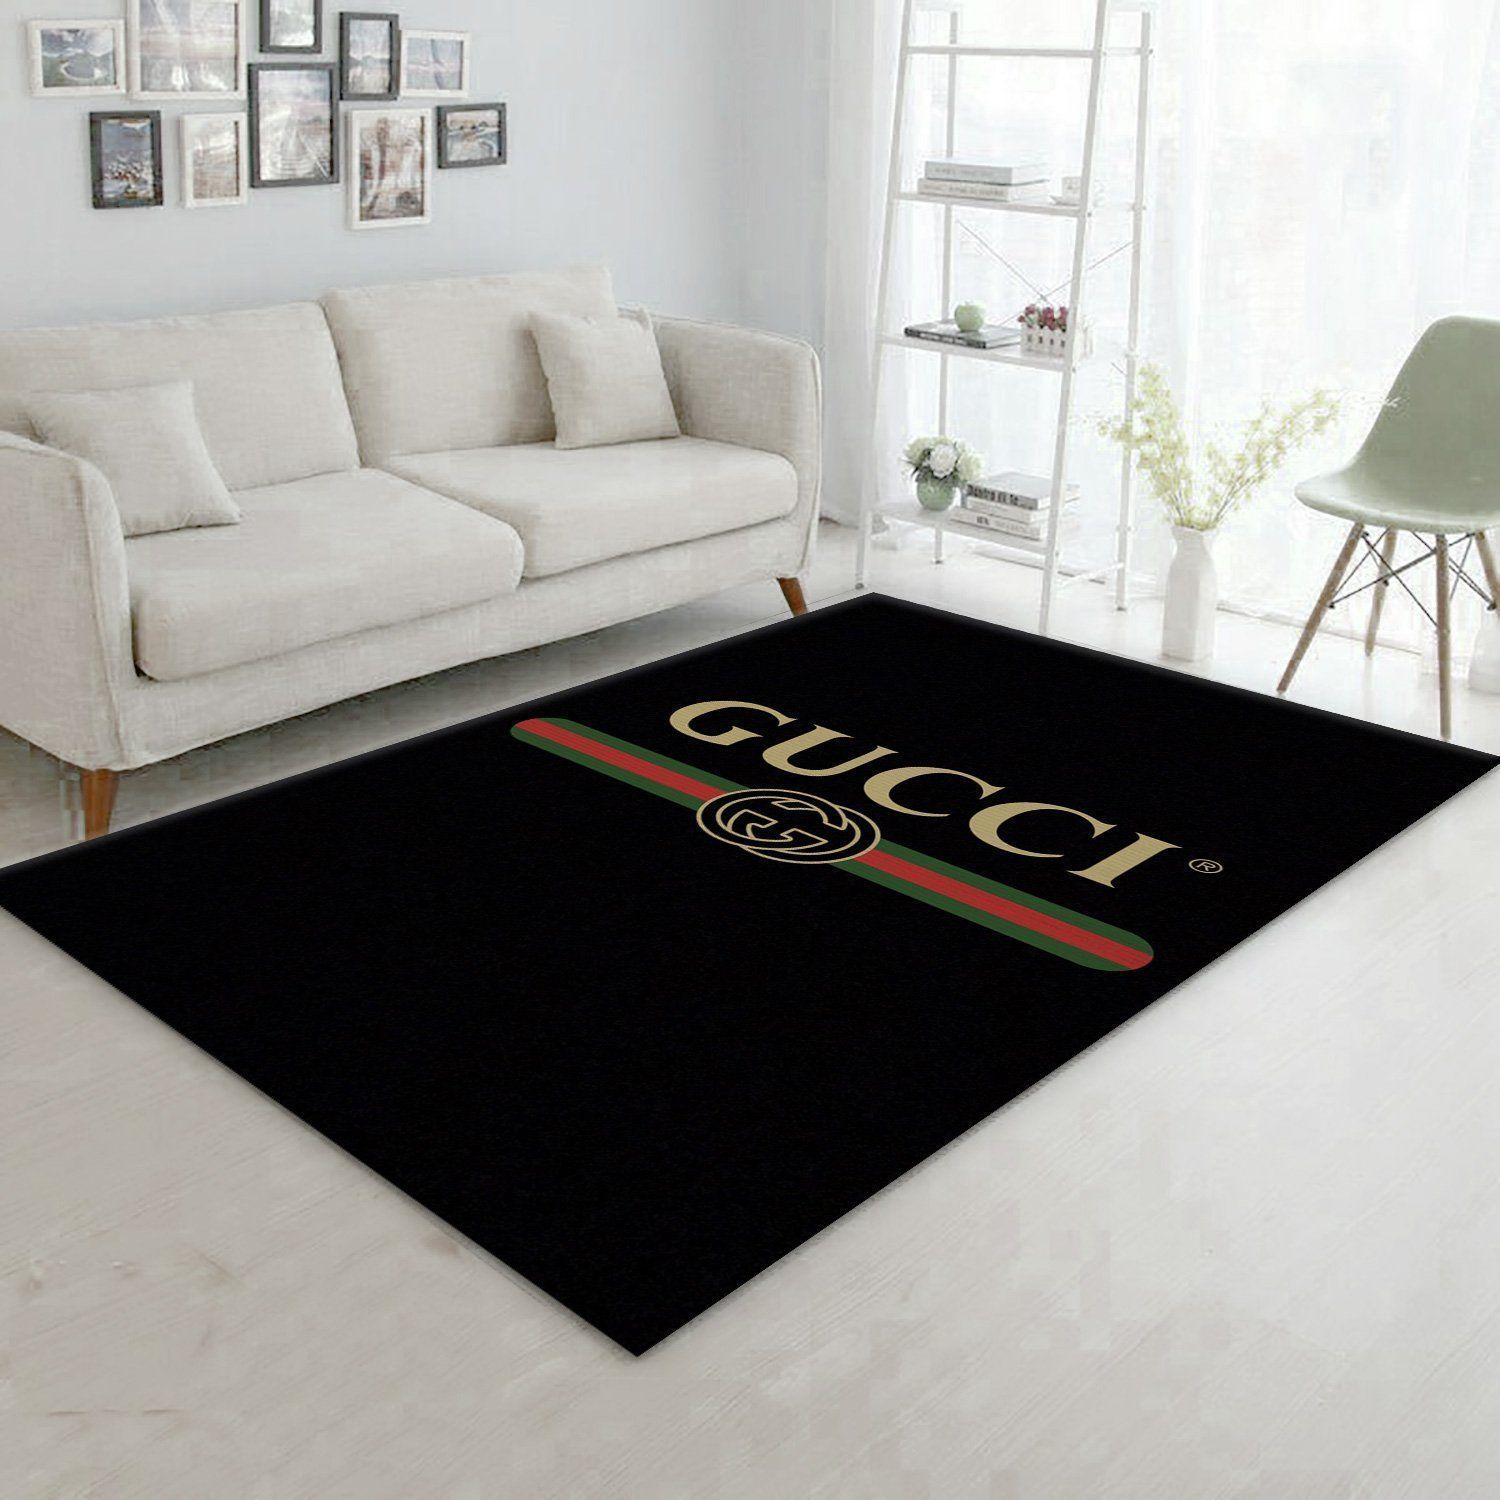 Gucci Carpet Area Rug Living Room Home Decor For Christmas Bedroom – Fashionazon